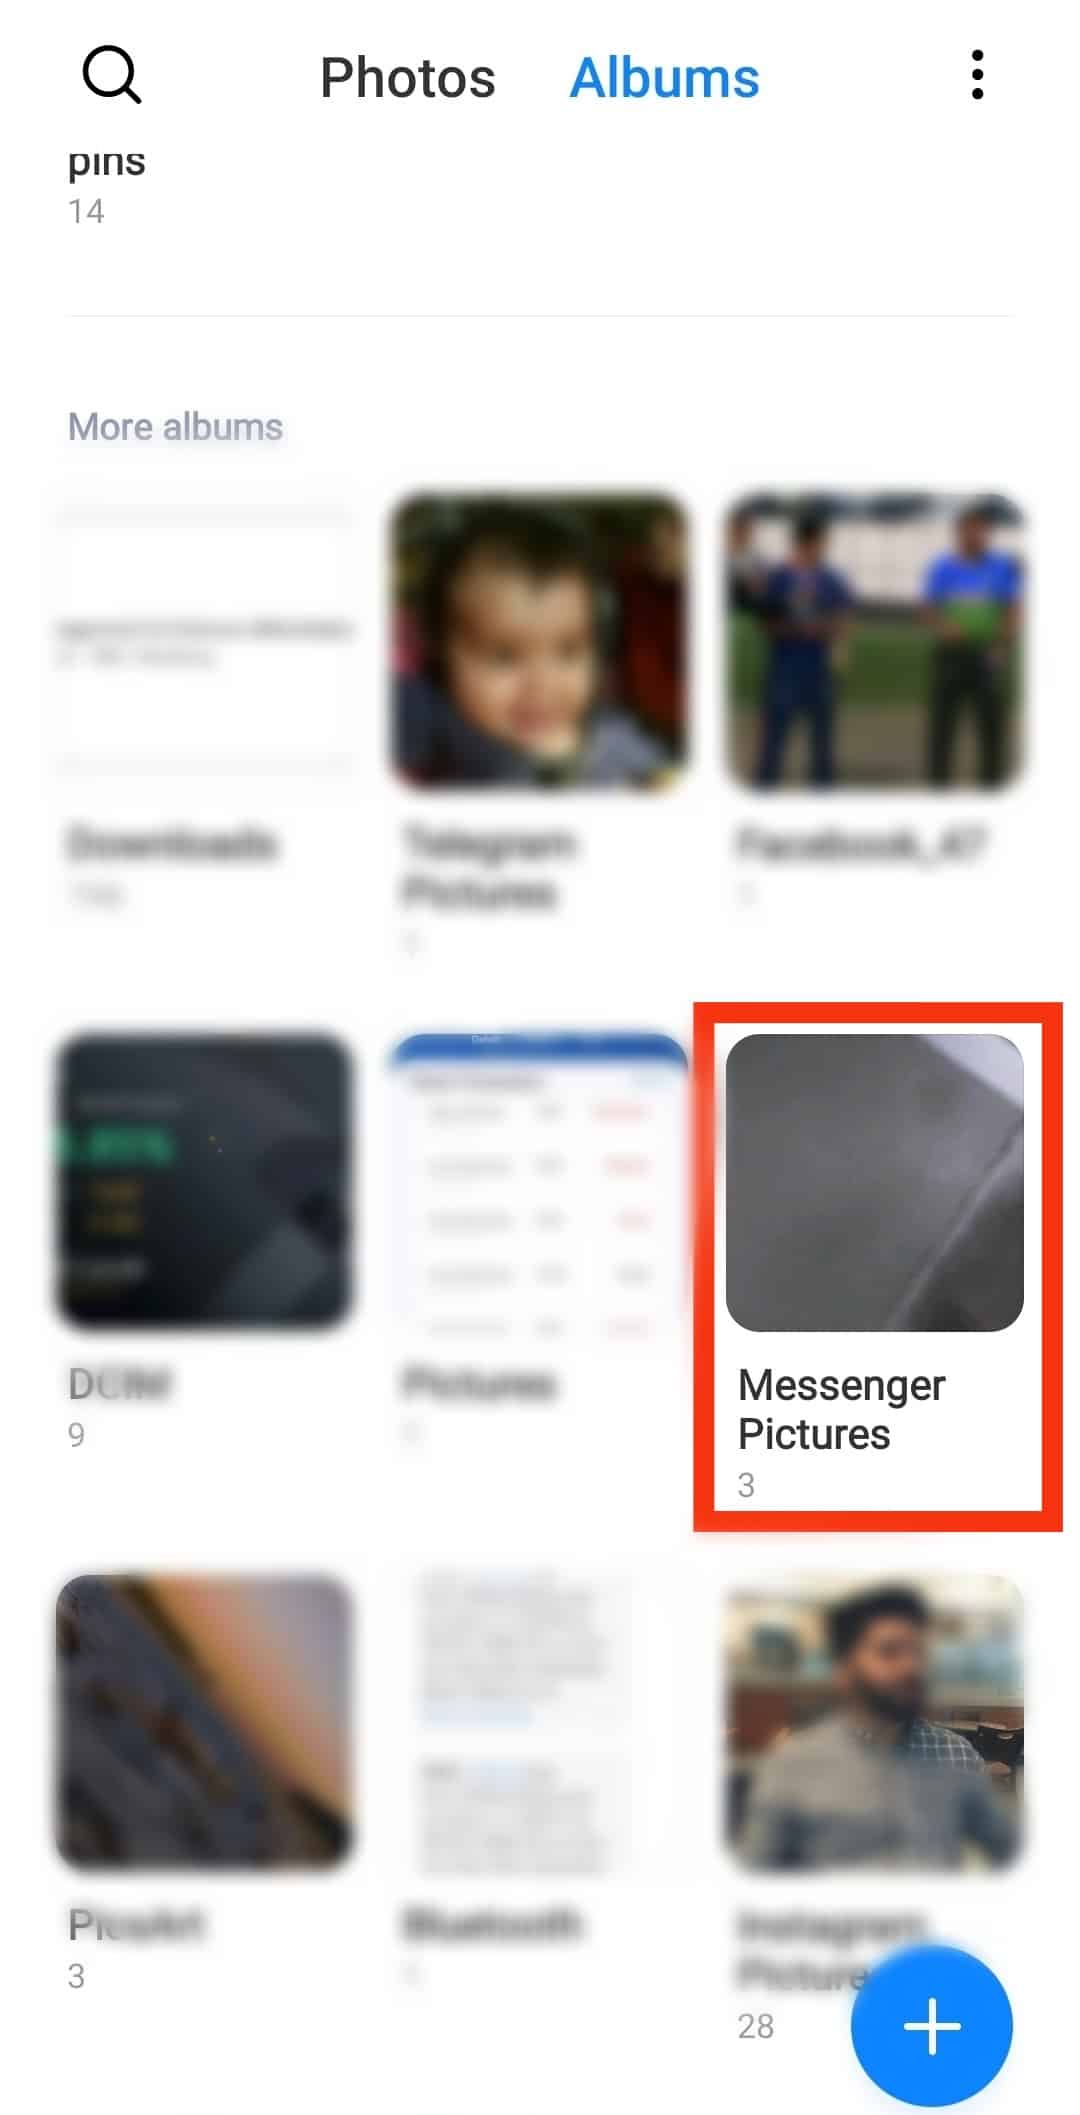 Tap On The Messenger Folder